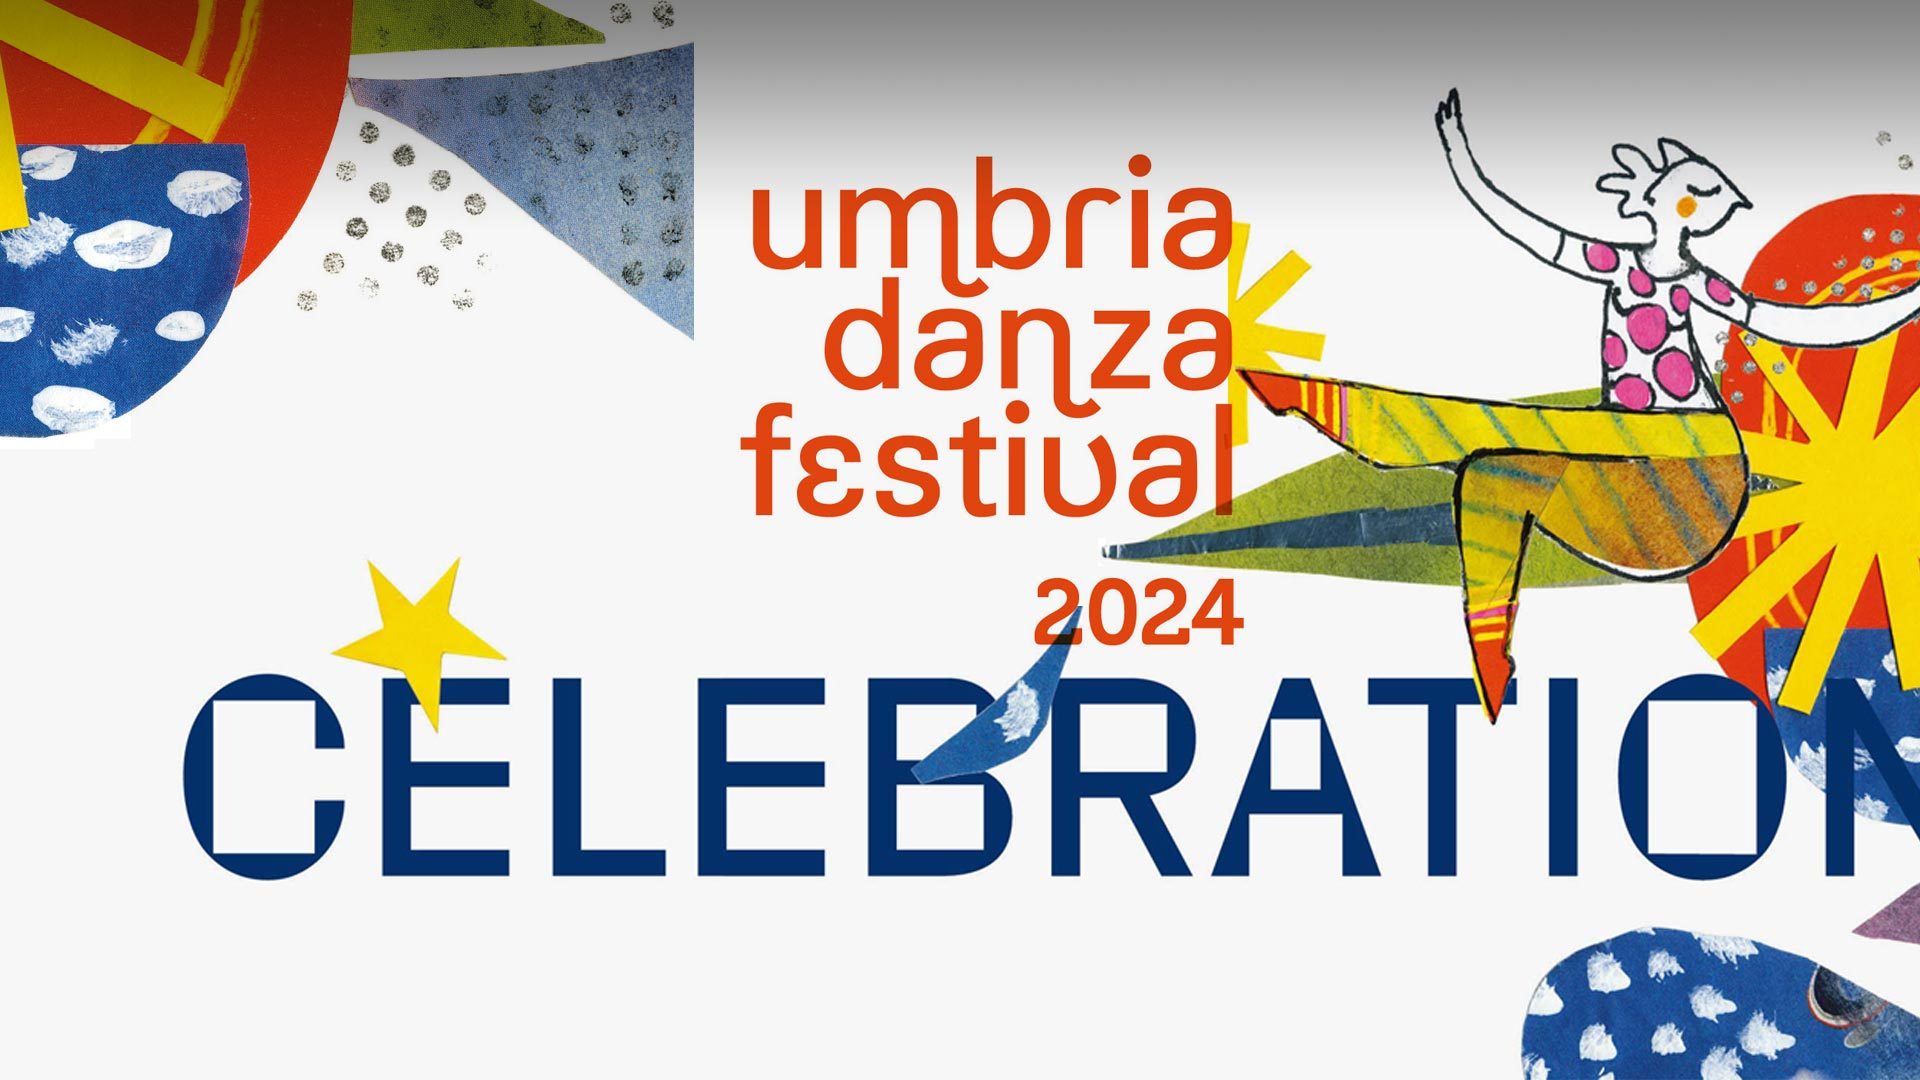 umbria<br>danza festival